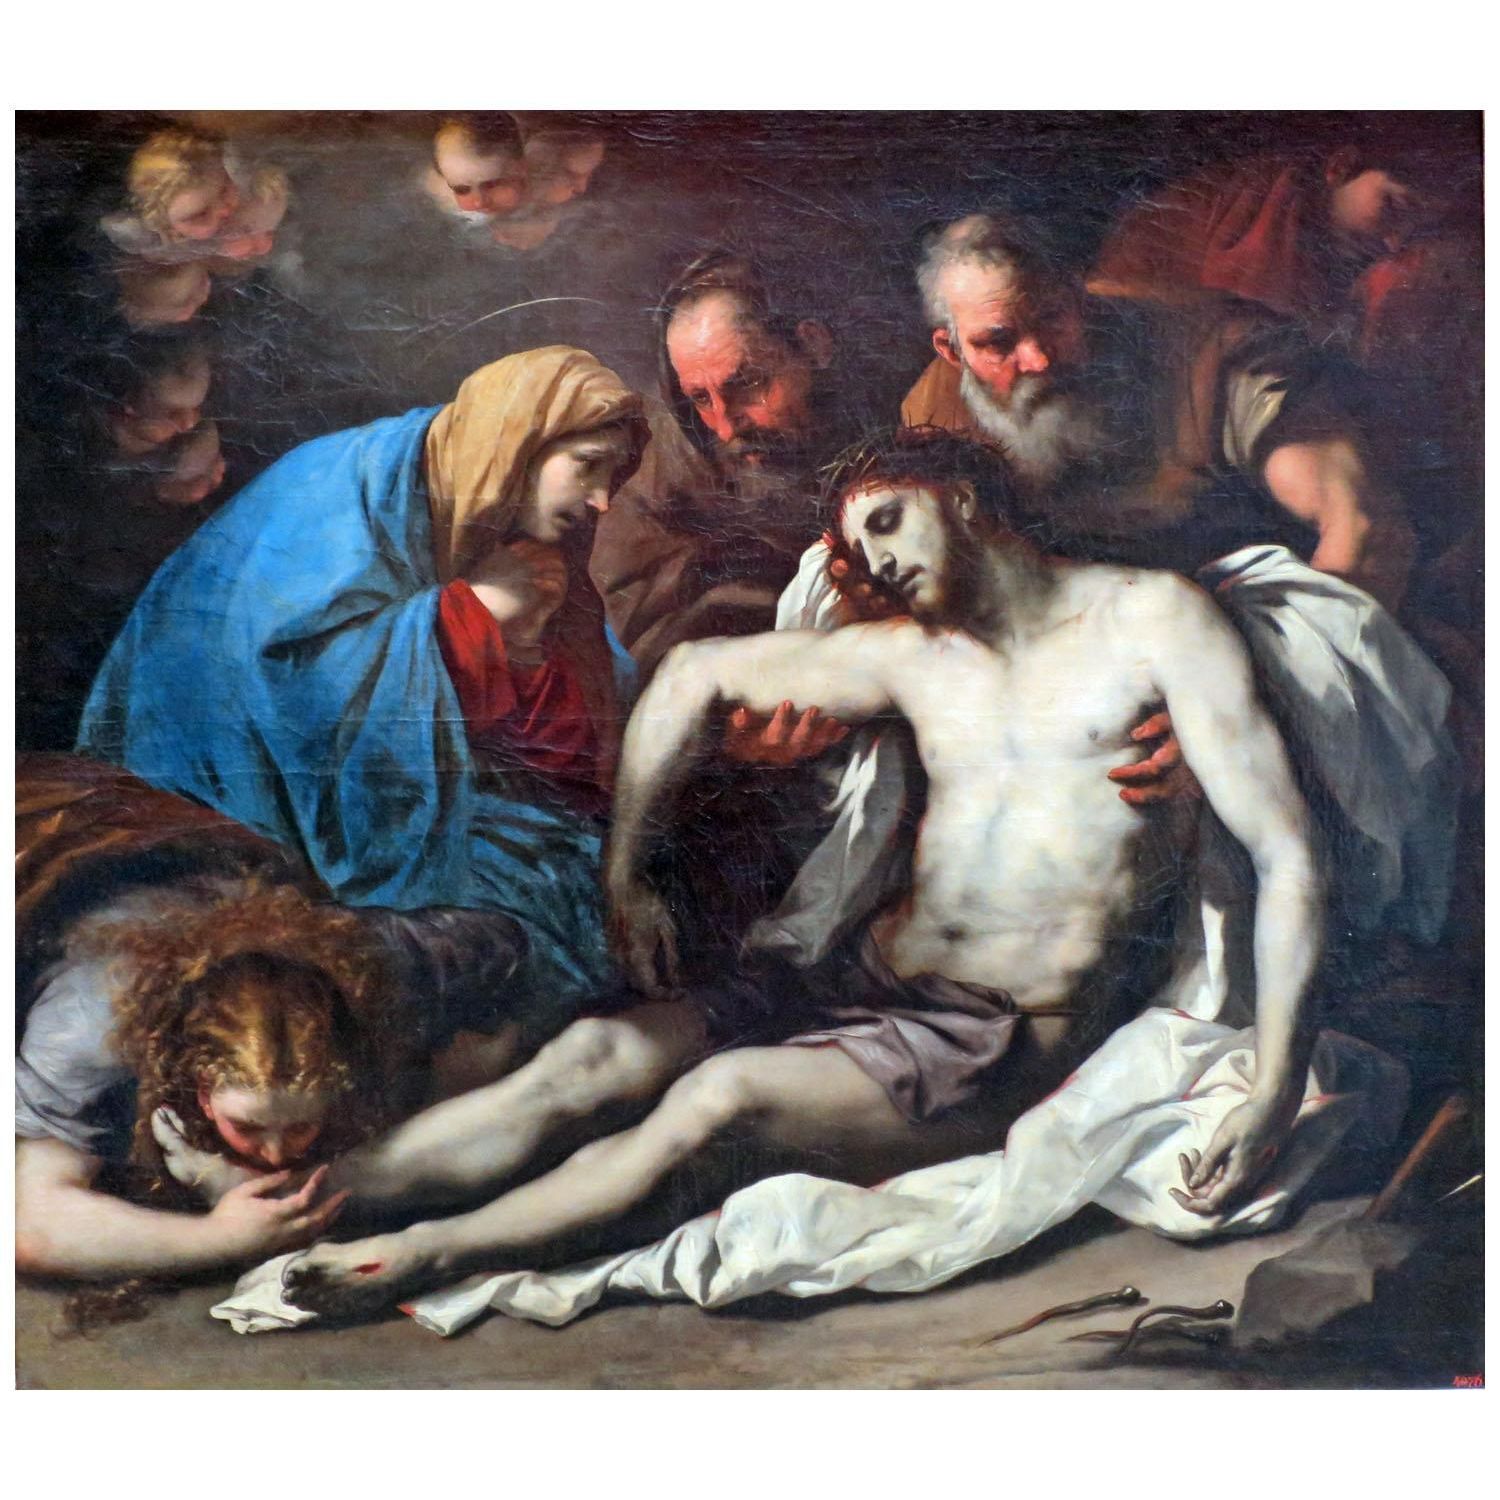 Luca Giordano. Pieta. 1670-1675. Hermitage Museum